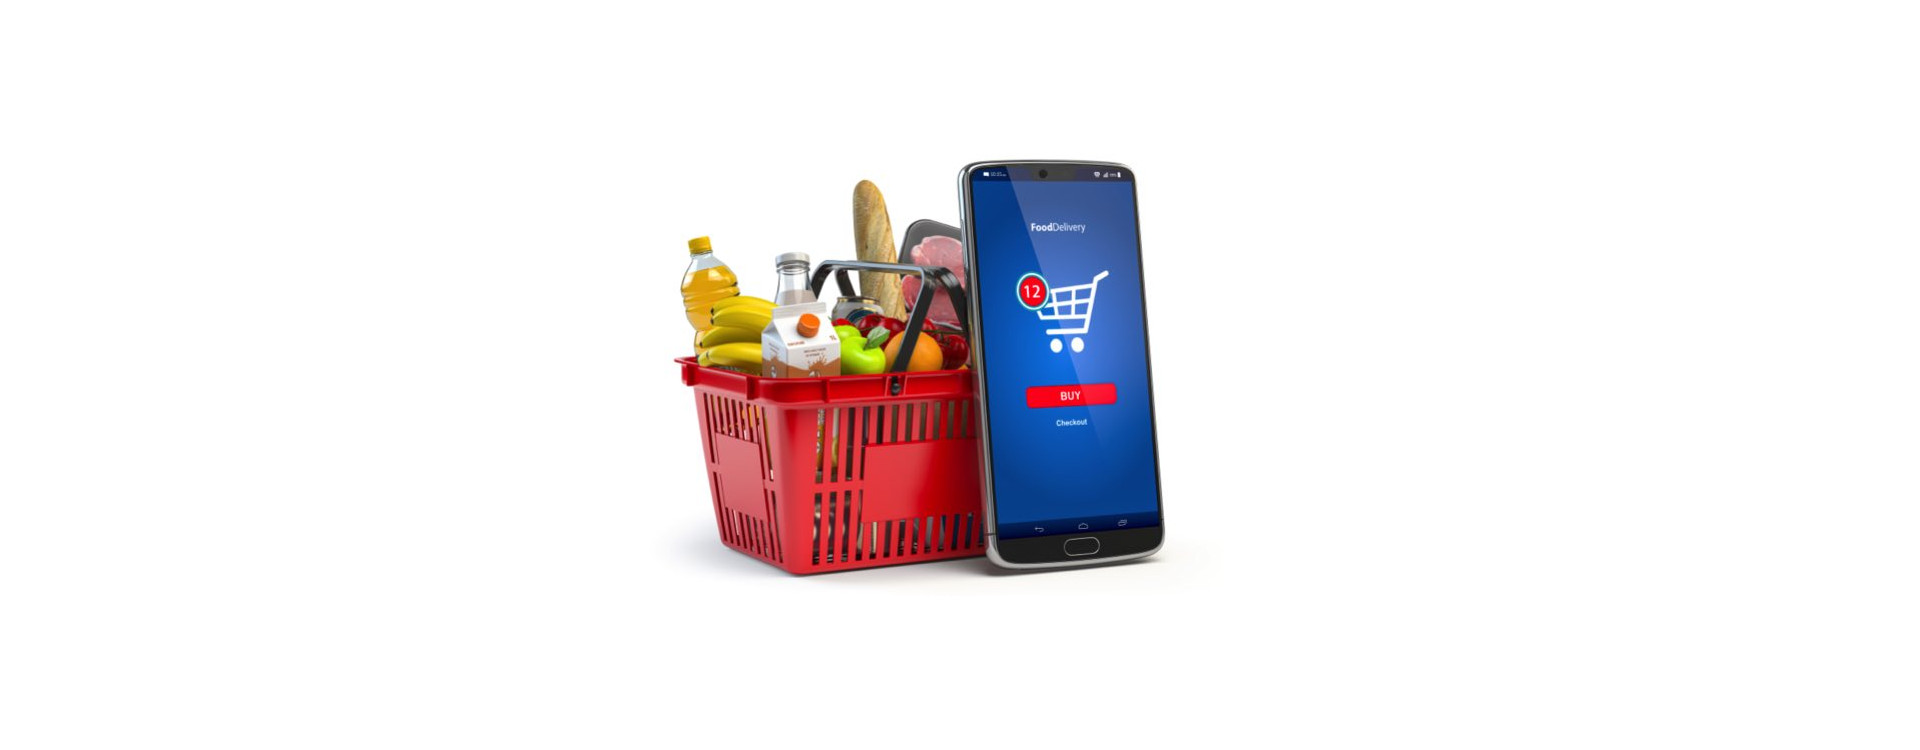 Ofertes i compra de comestibles en línia